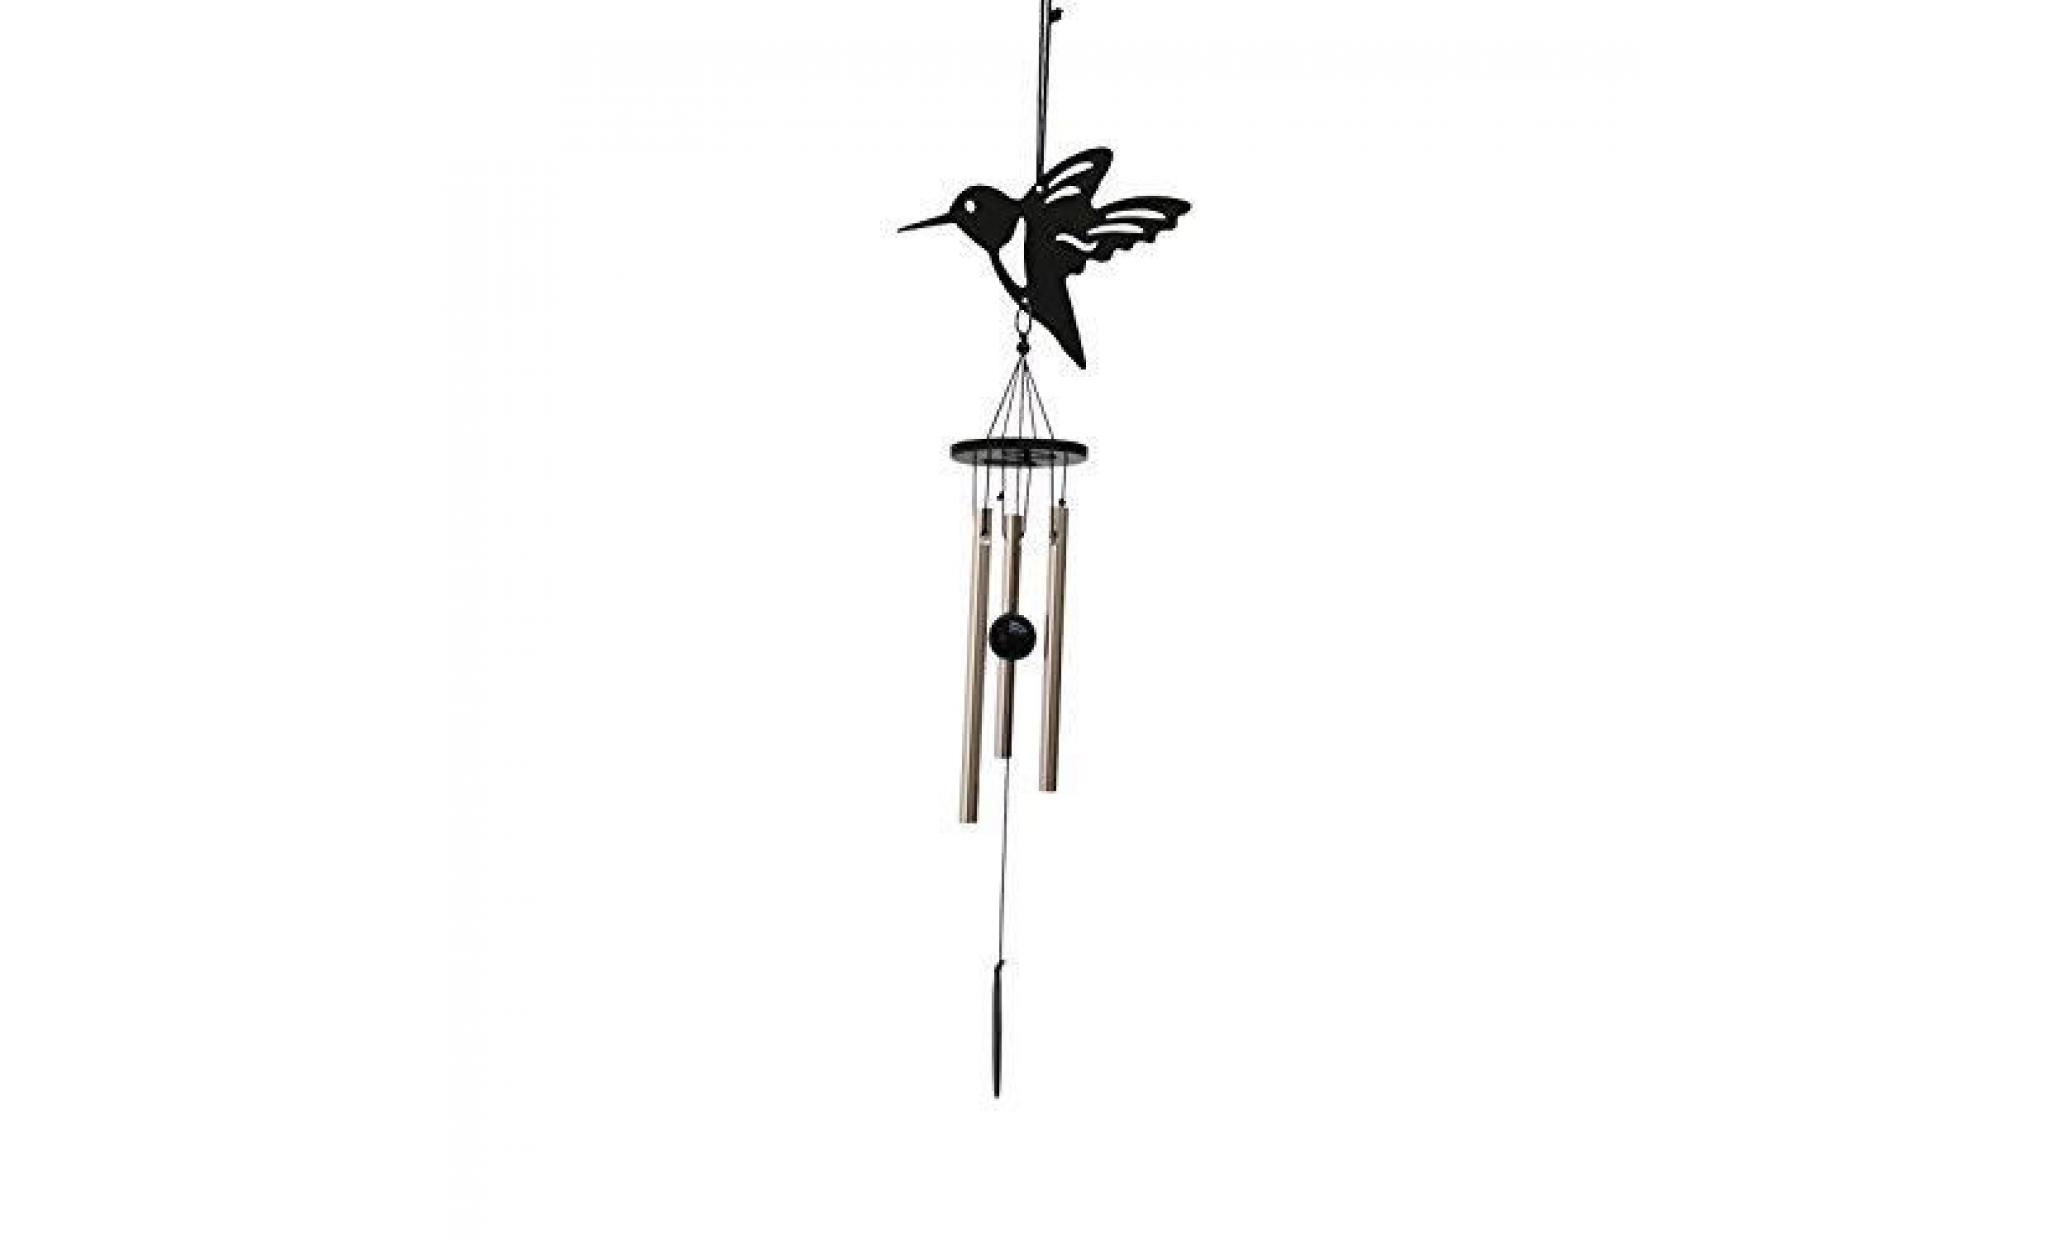 runfon carillon de vent 3 tubes cloches métallique feng shui décoration suspendue   oiseau pas cher